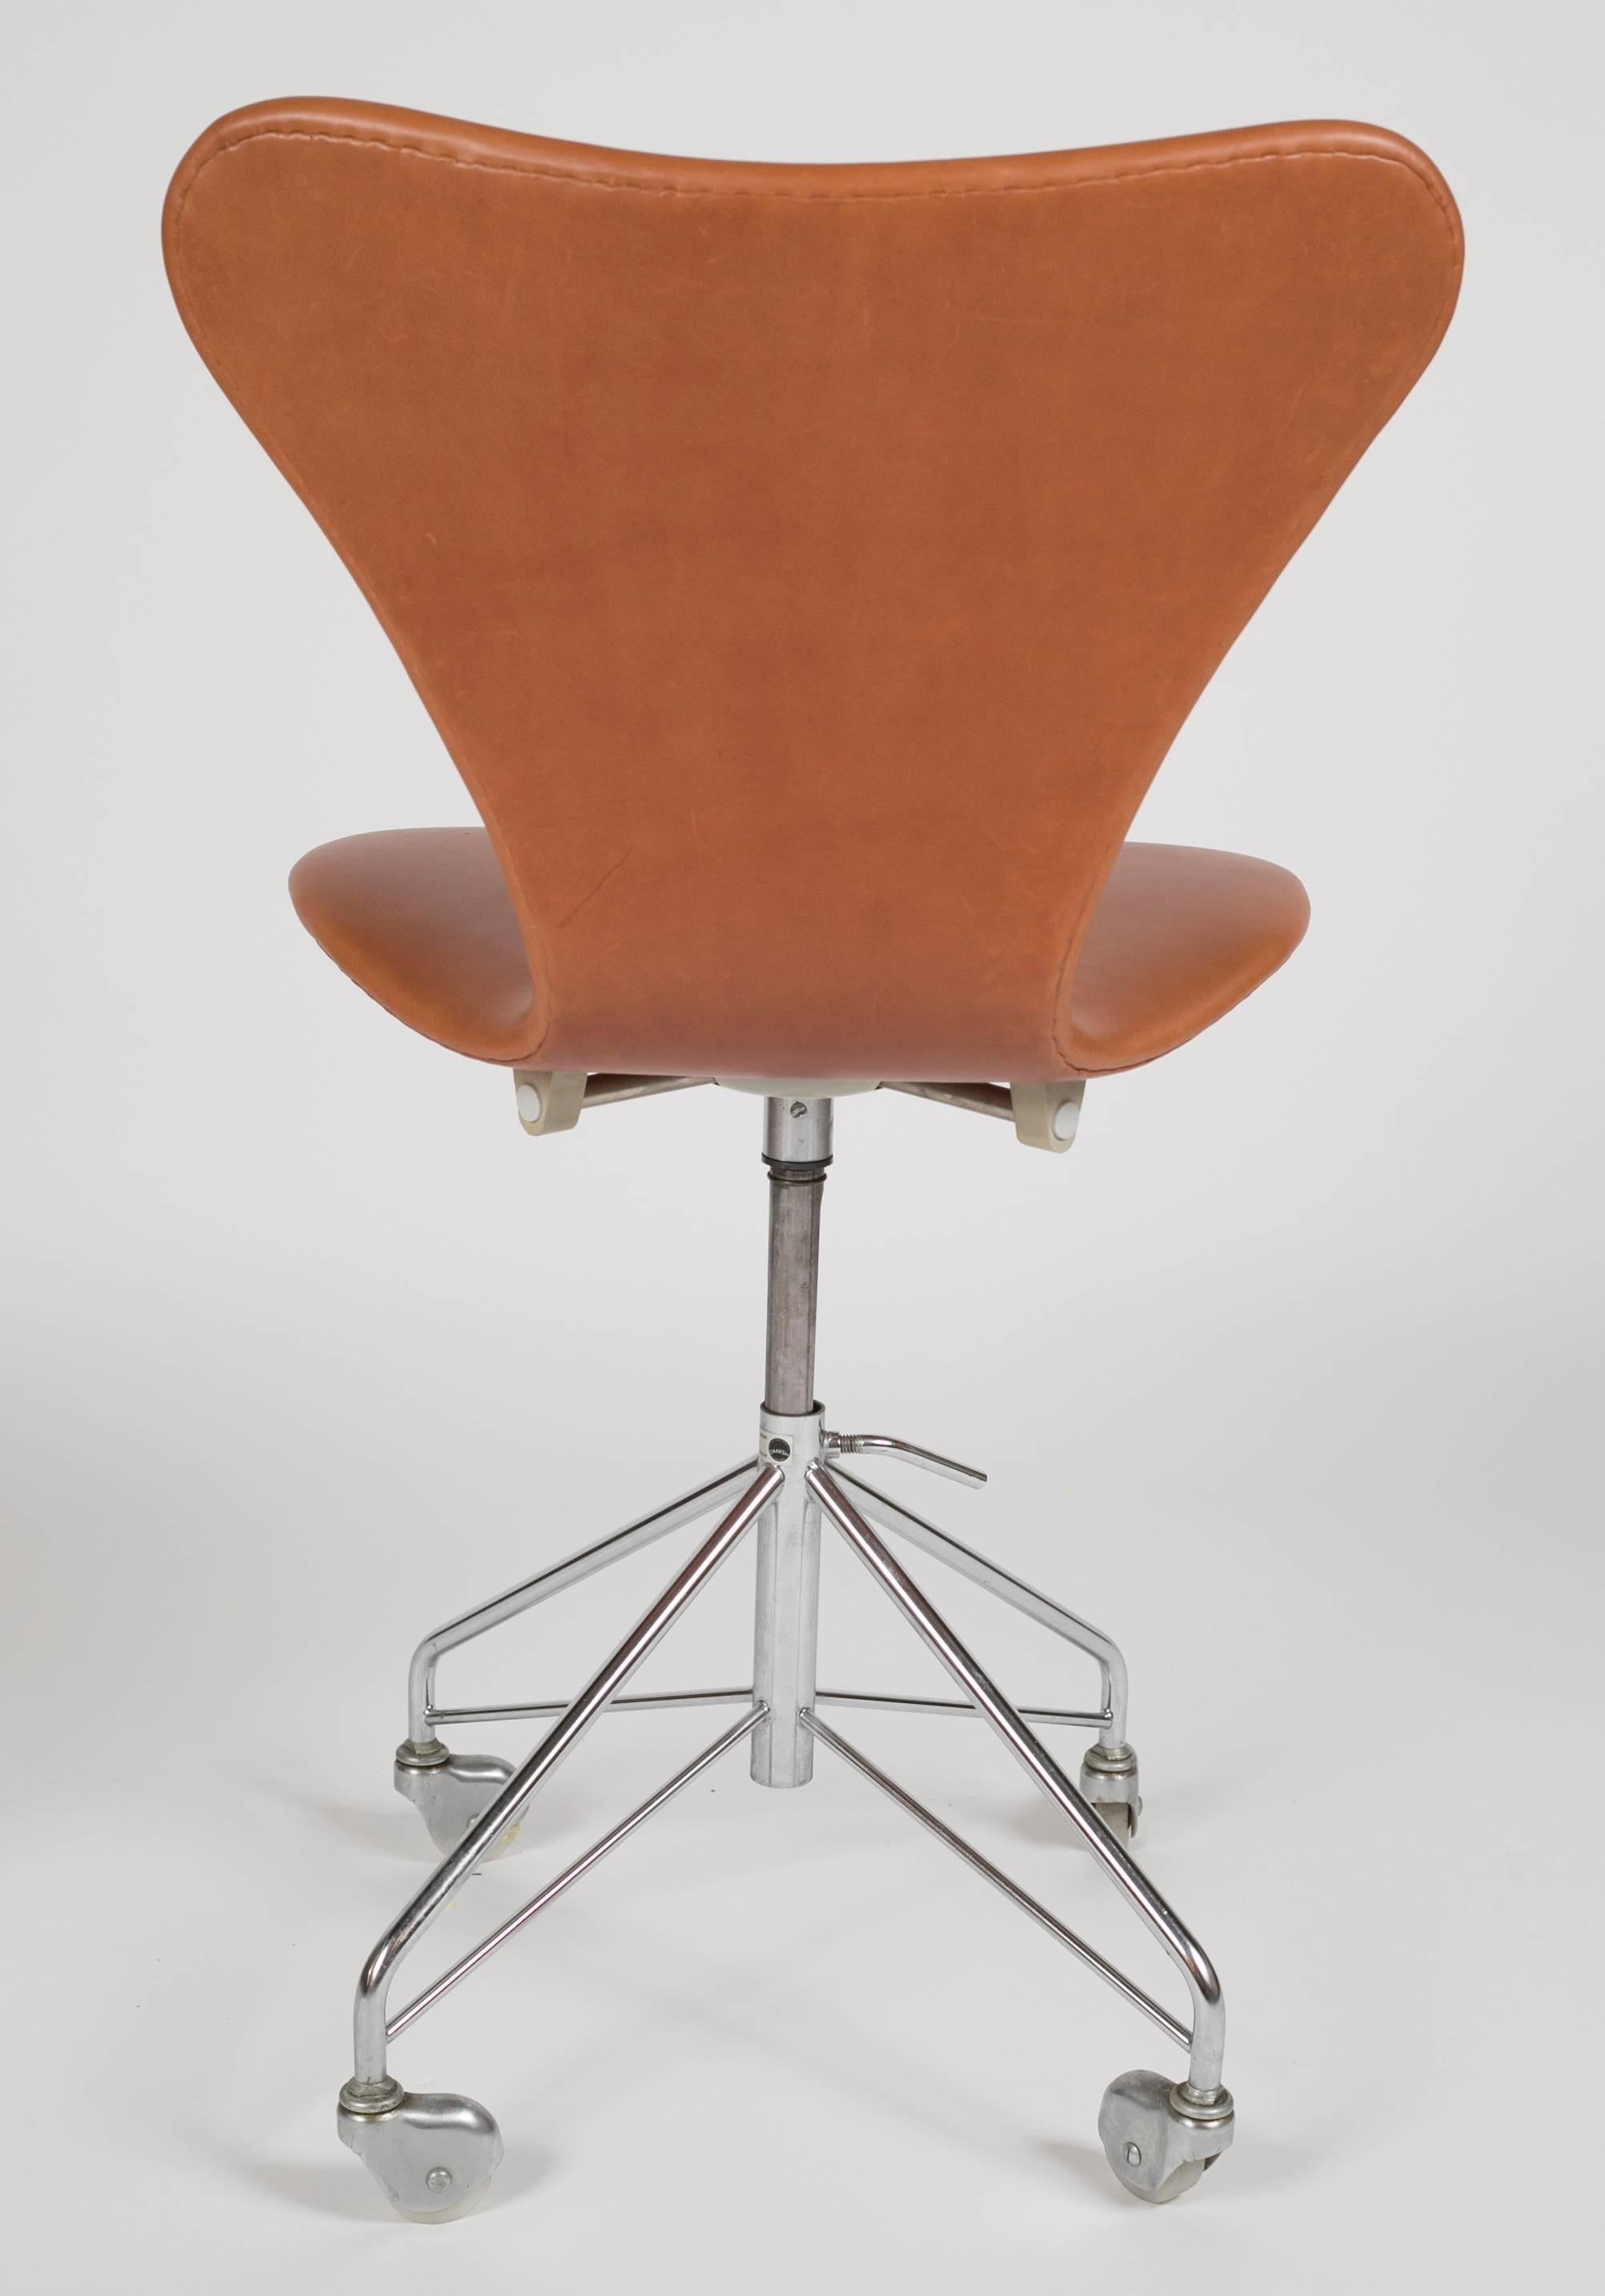 Danish Model 3117 Leather Swivel Desk Chair by Arne Jacobsen for Fritz Hansen